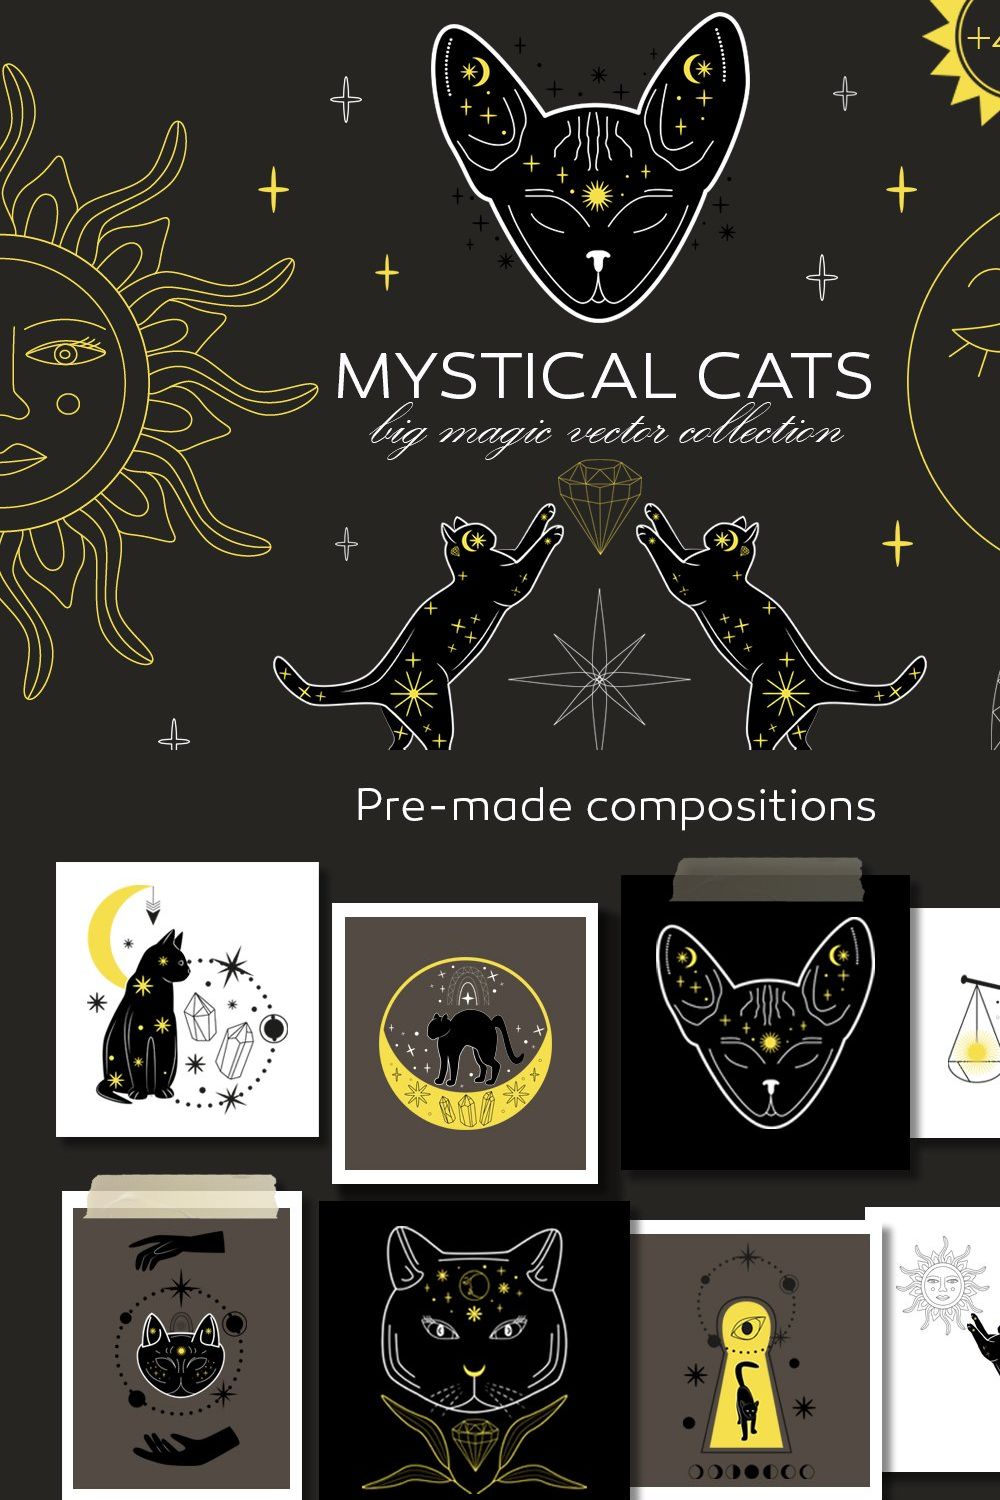 Mystical Cats. Lunar & celestial set pinterest preview image.